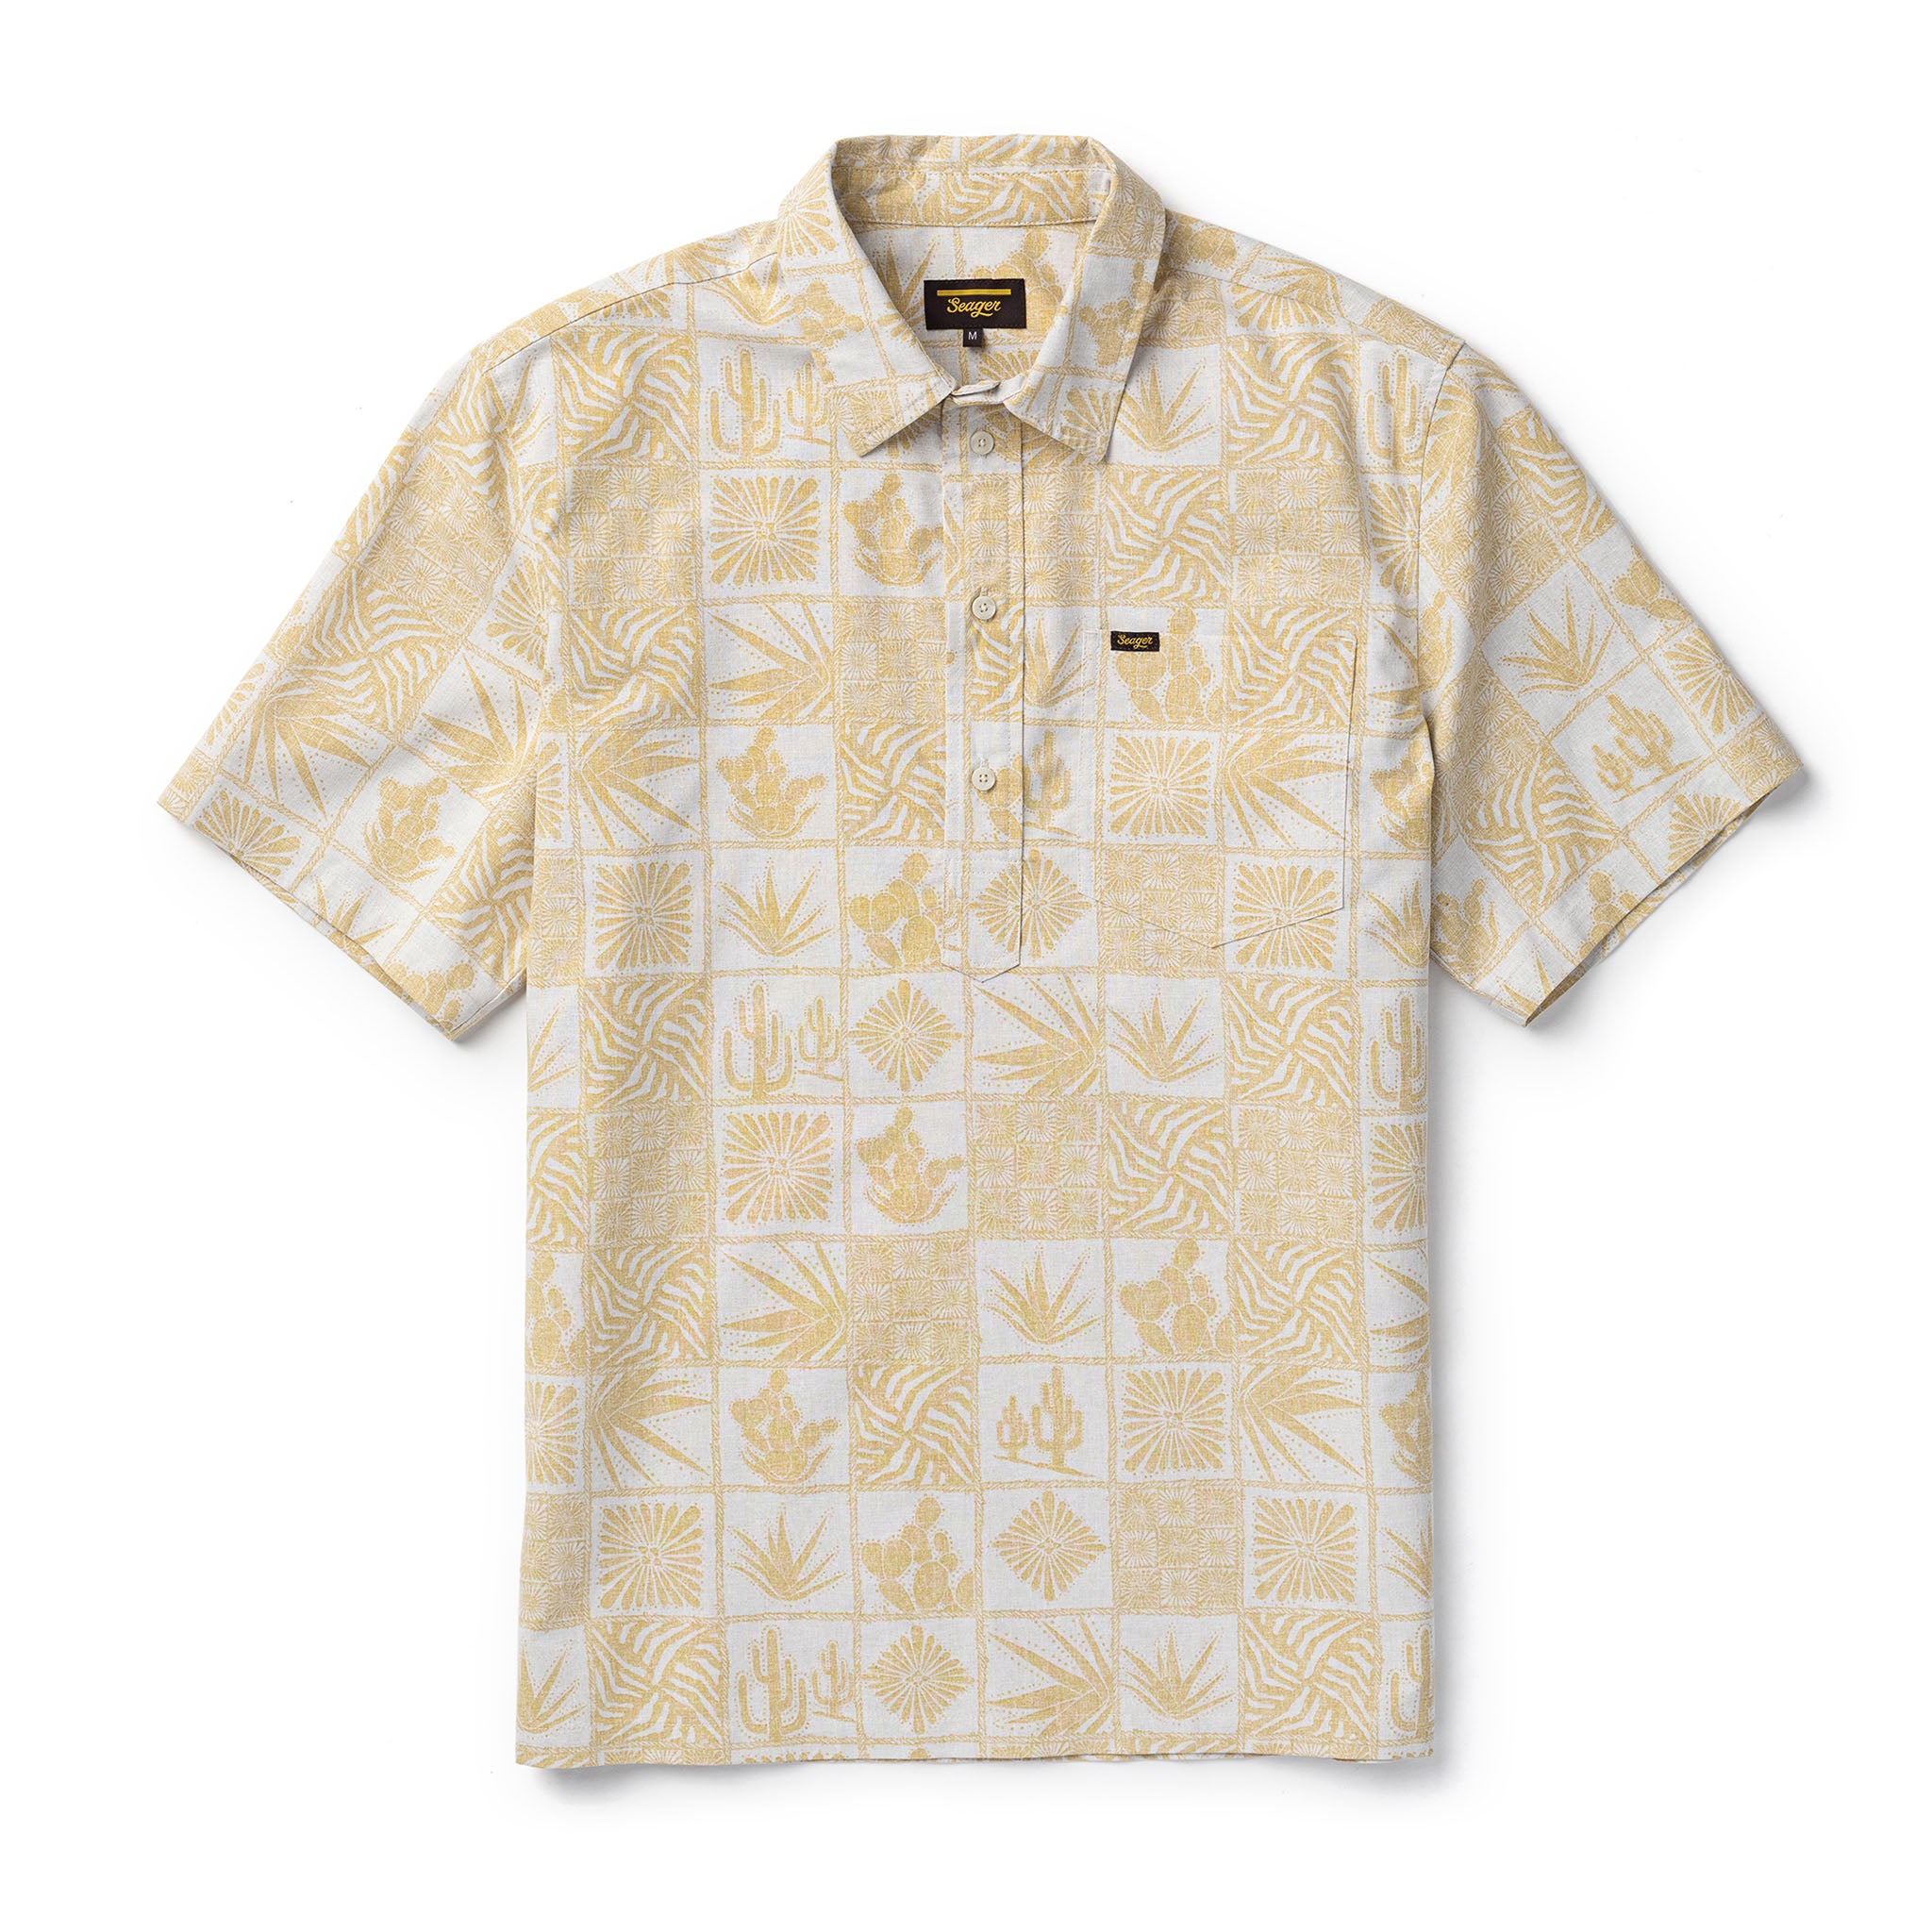 Schooner 3/4 Button S/S Shirt Desert Gold